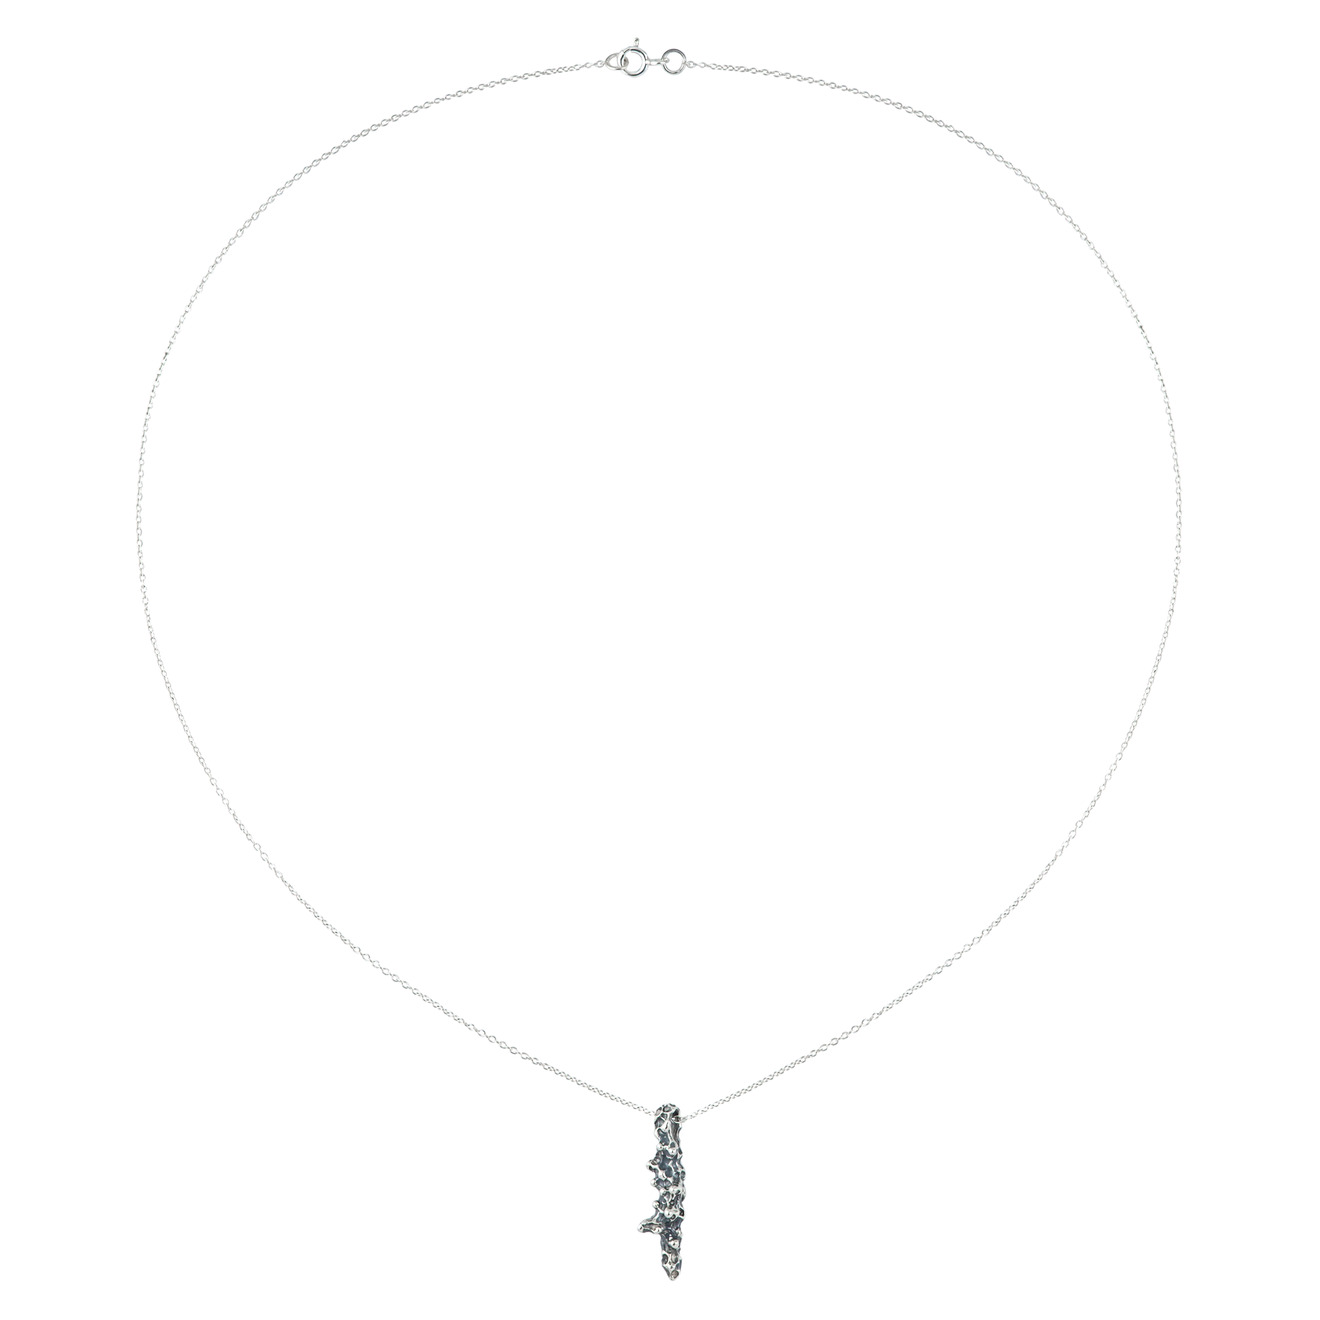 Materia Jewelry Колье Coral из серебра медная подвеска море авторское украшение на шею